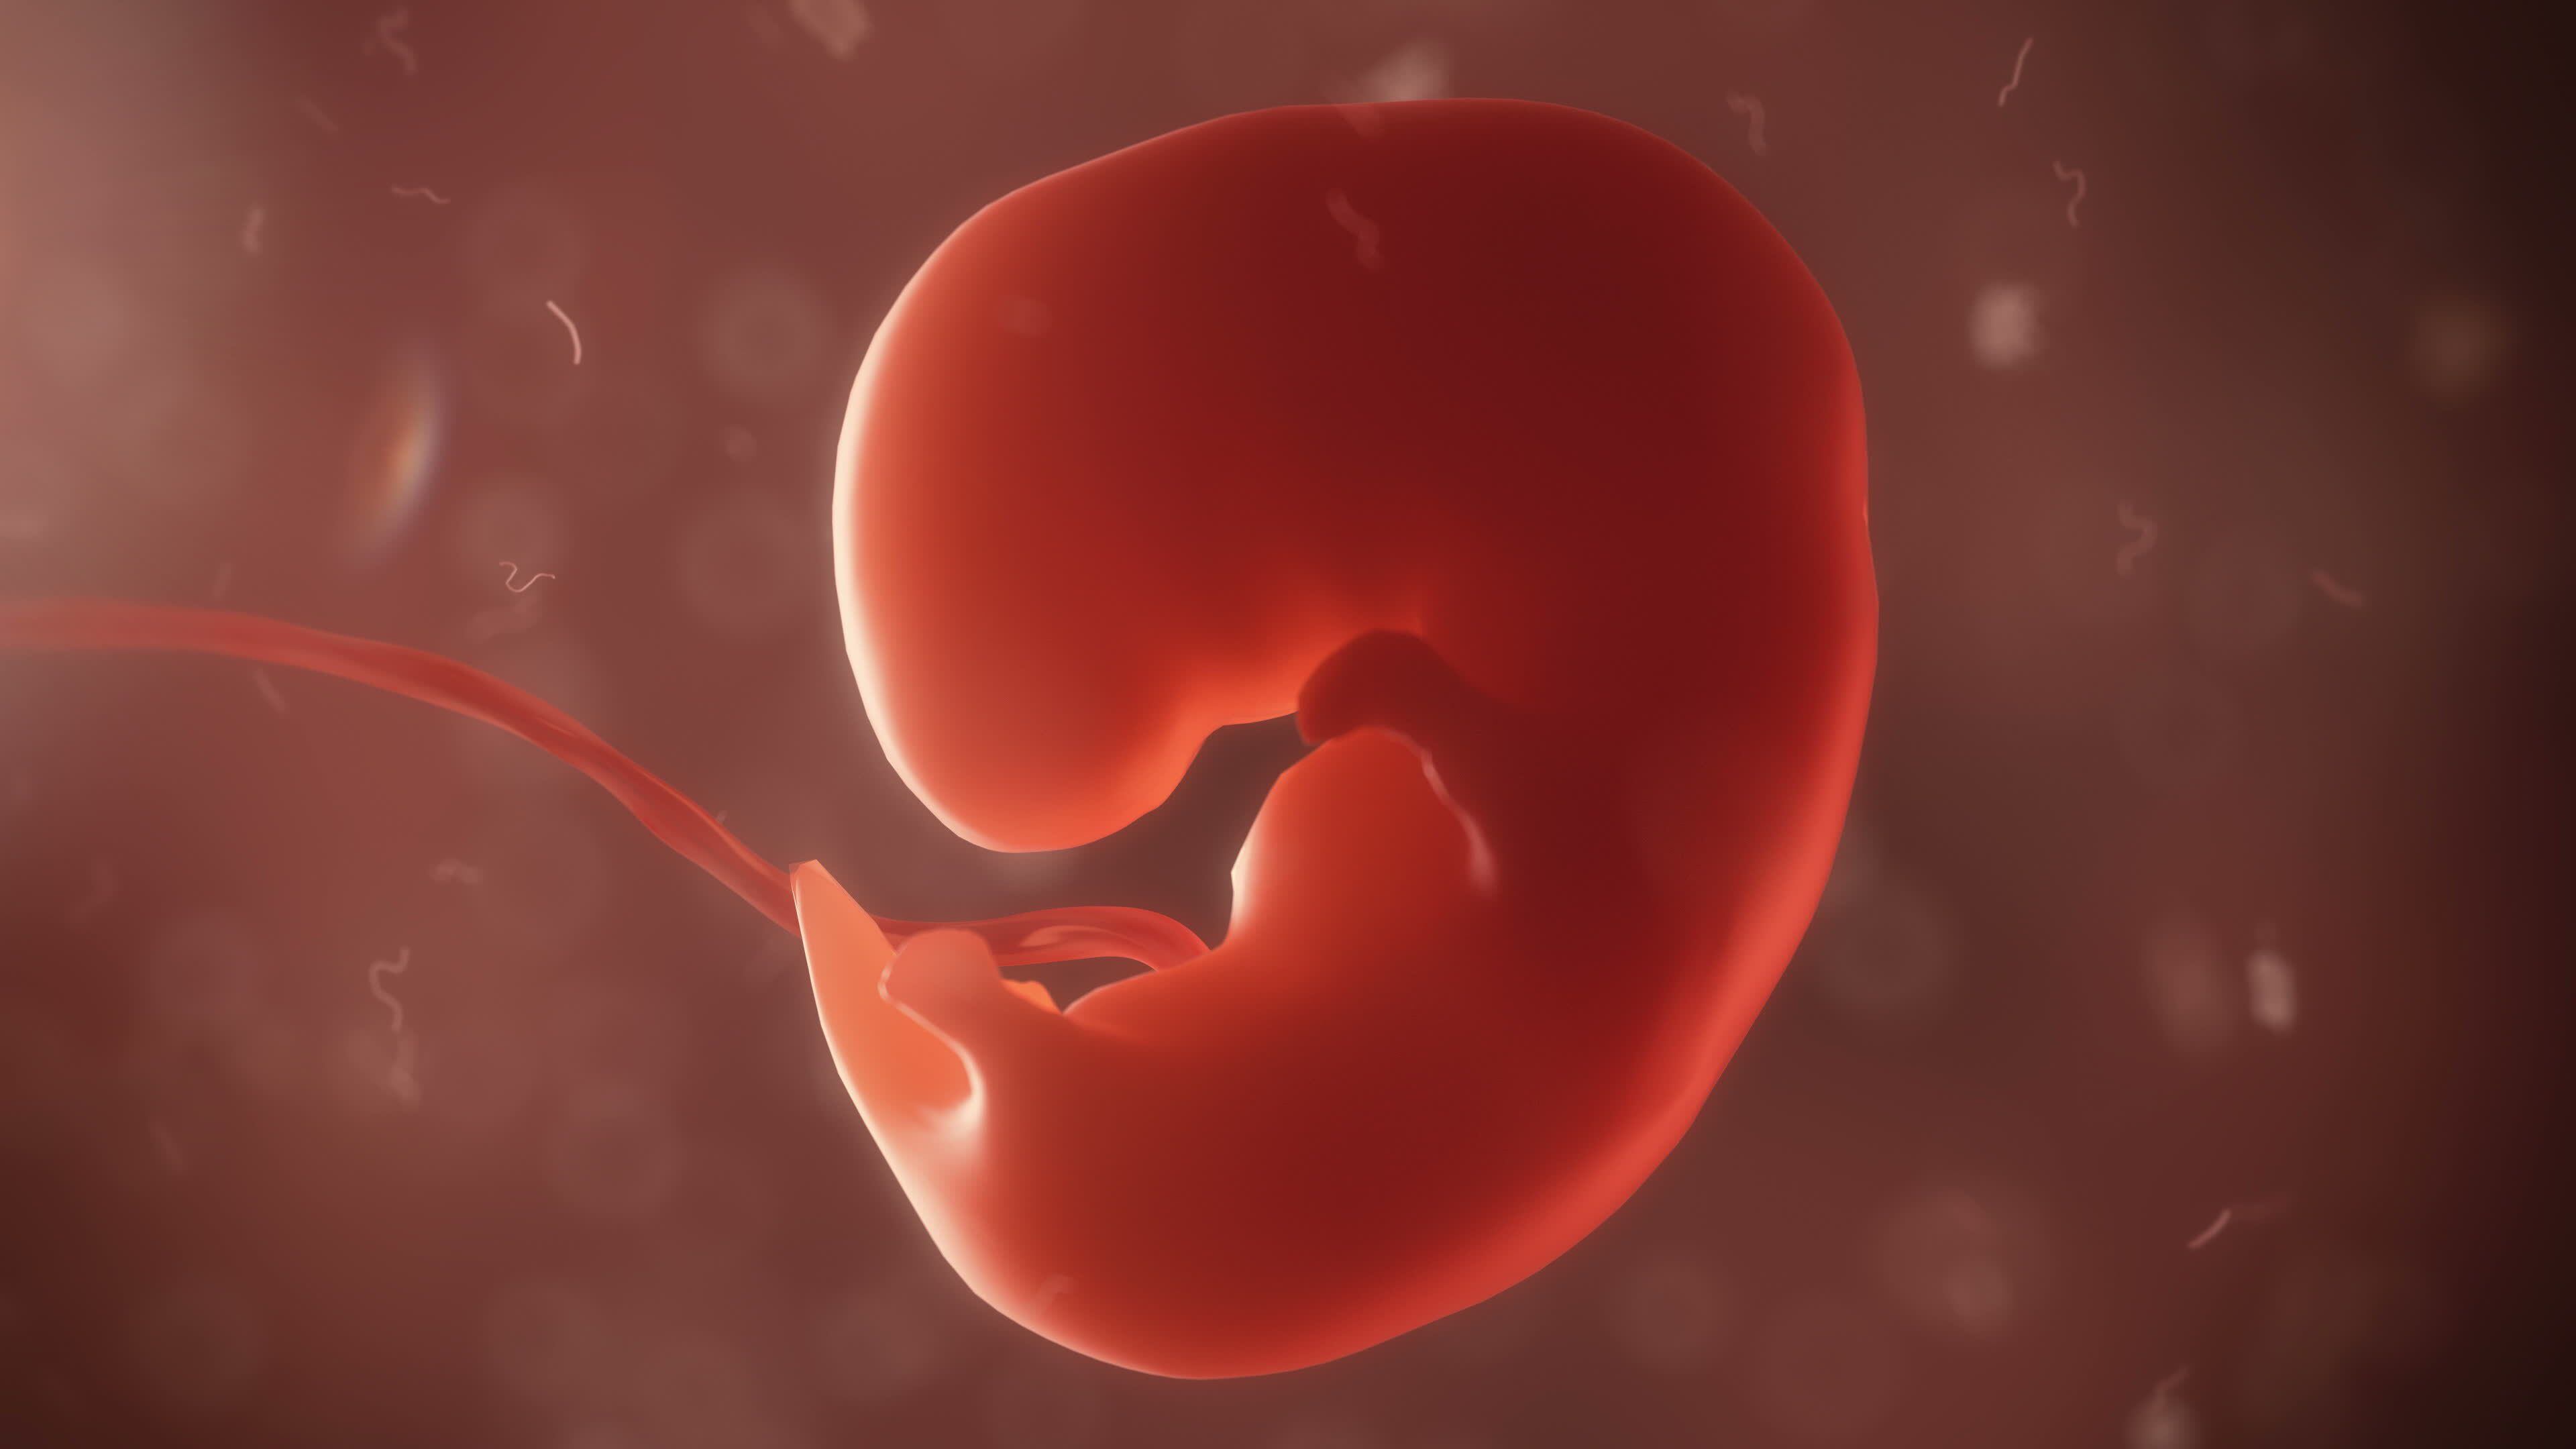 Especie humana podría reproducirse en el espacio, según un experimento científico con embriones de ratón en la Estación Espacial Internacional (EEI).